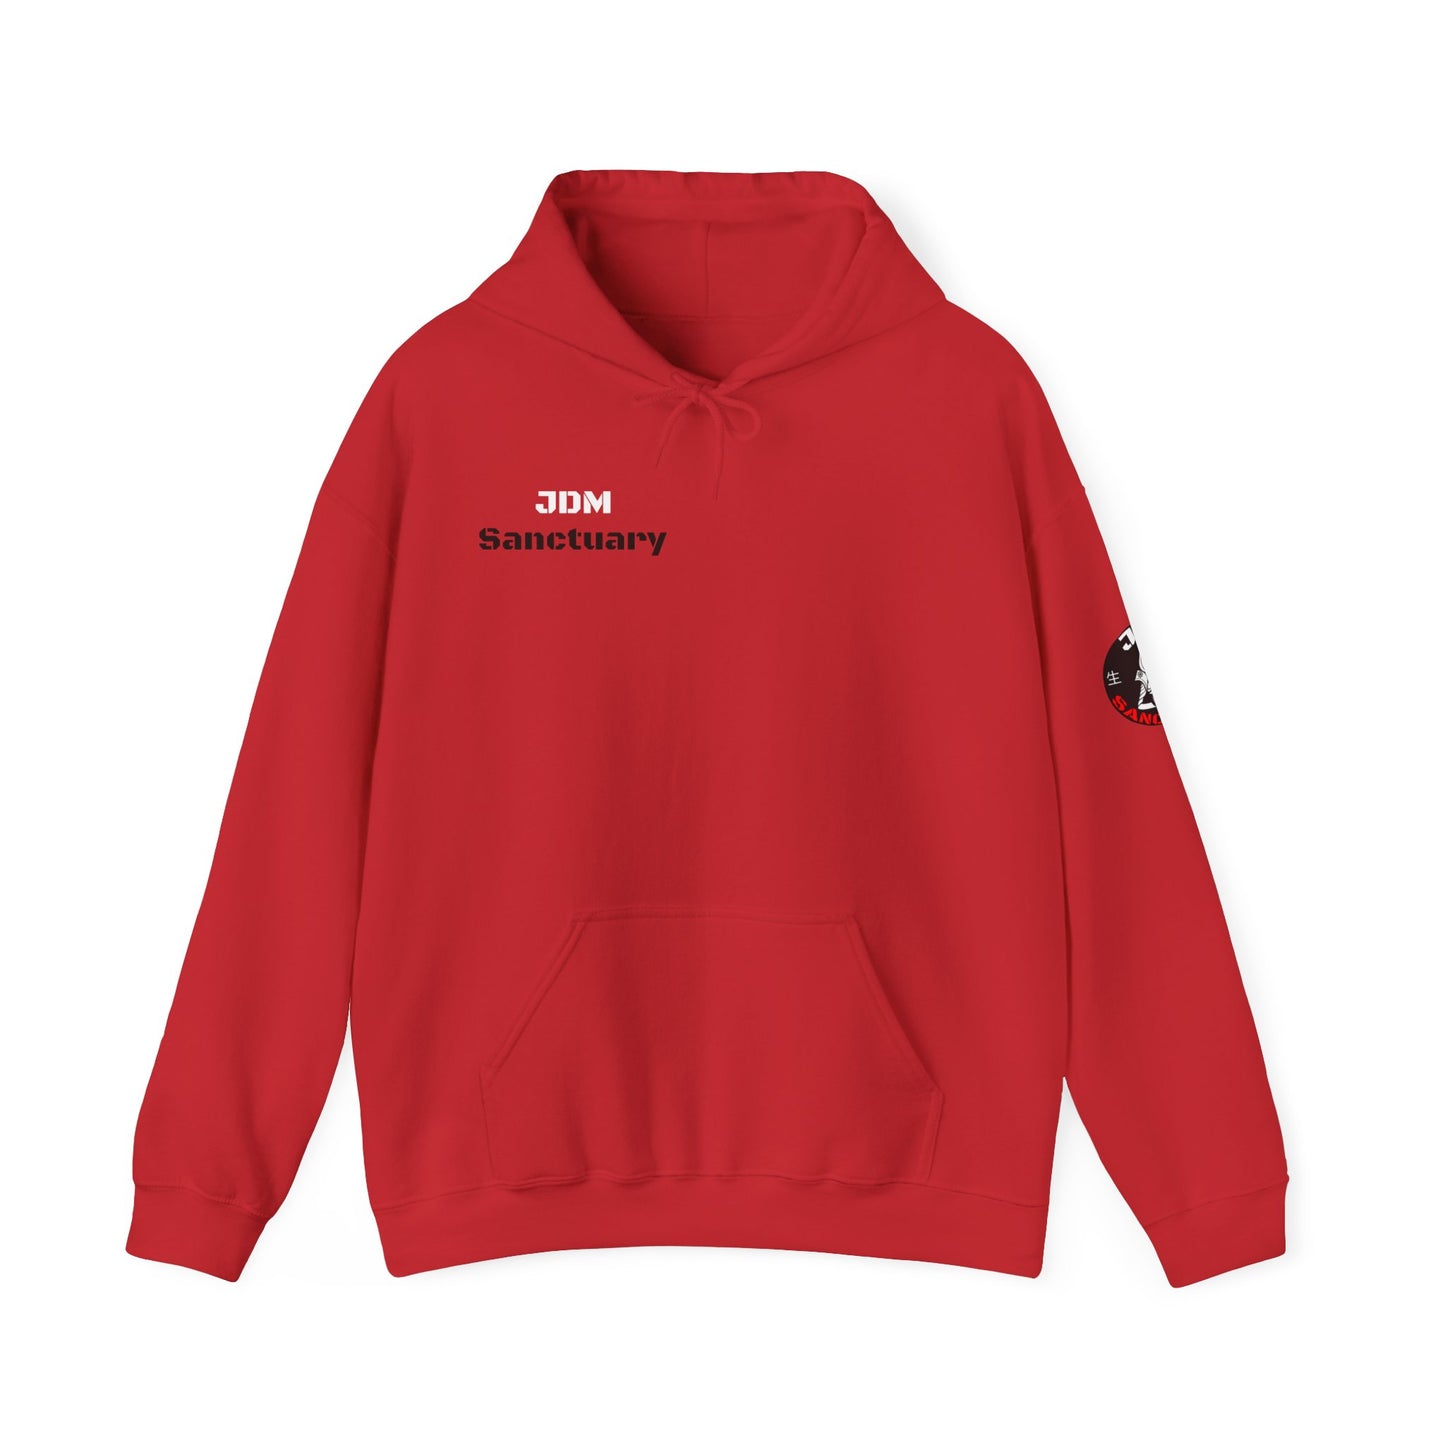 JDM Sanctuary hoodie